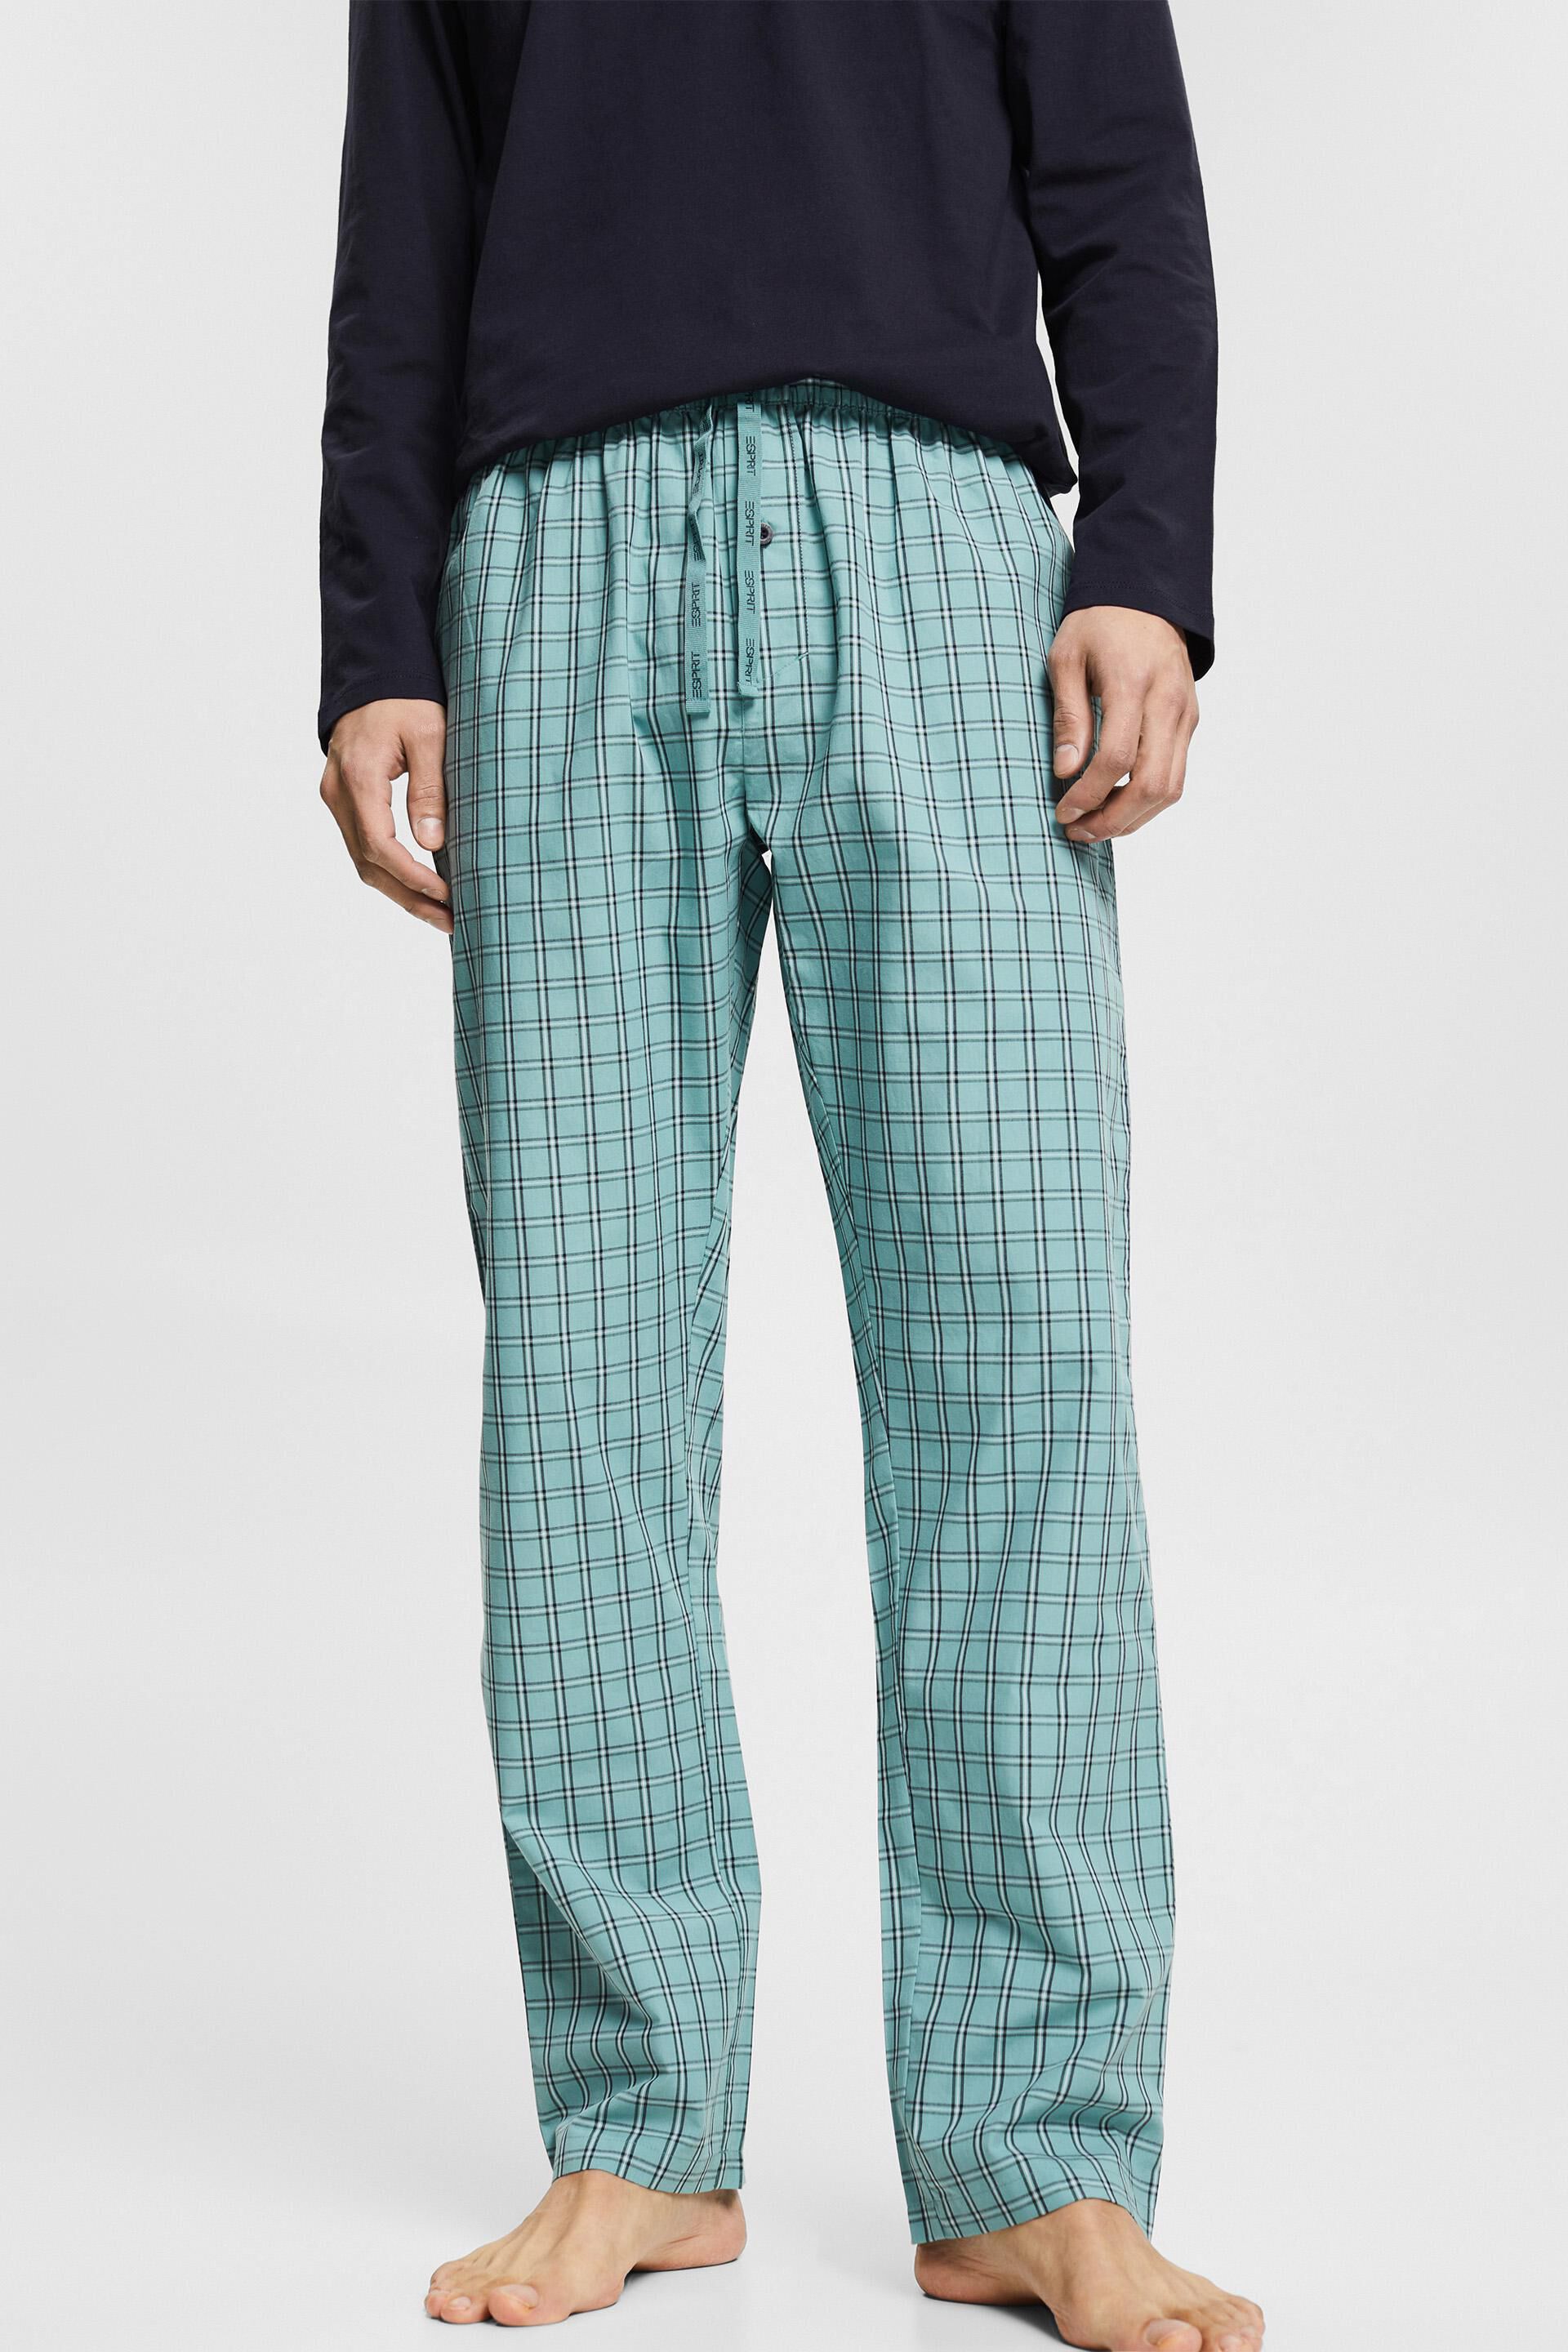 Top S-Sleeves Haut de Pyjama Marque : EspritEsprit Bodywear Coton Homme 